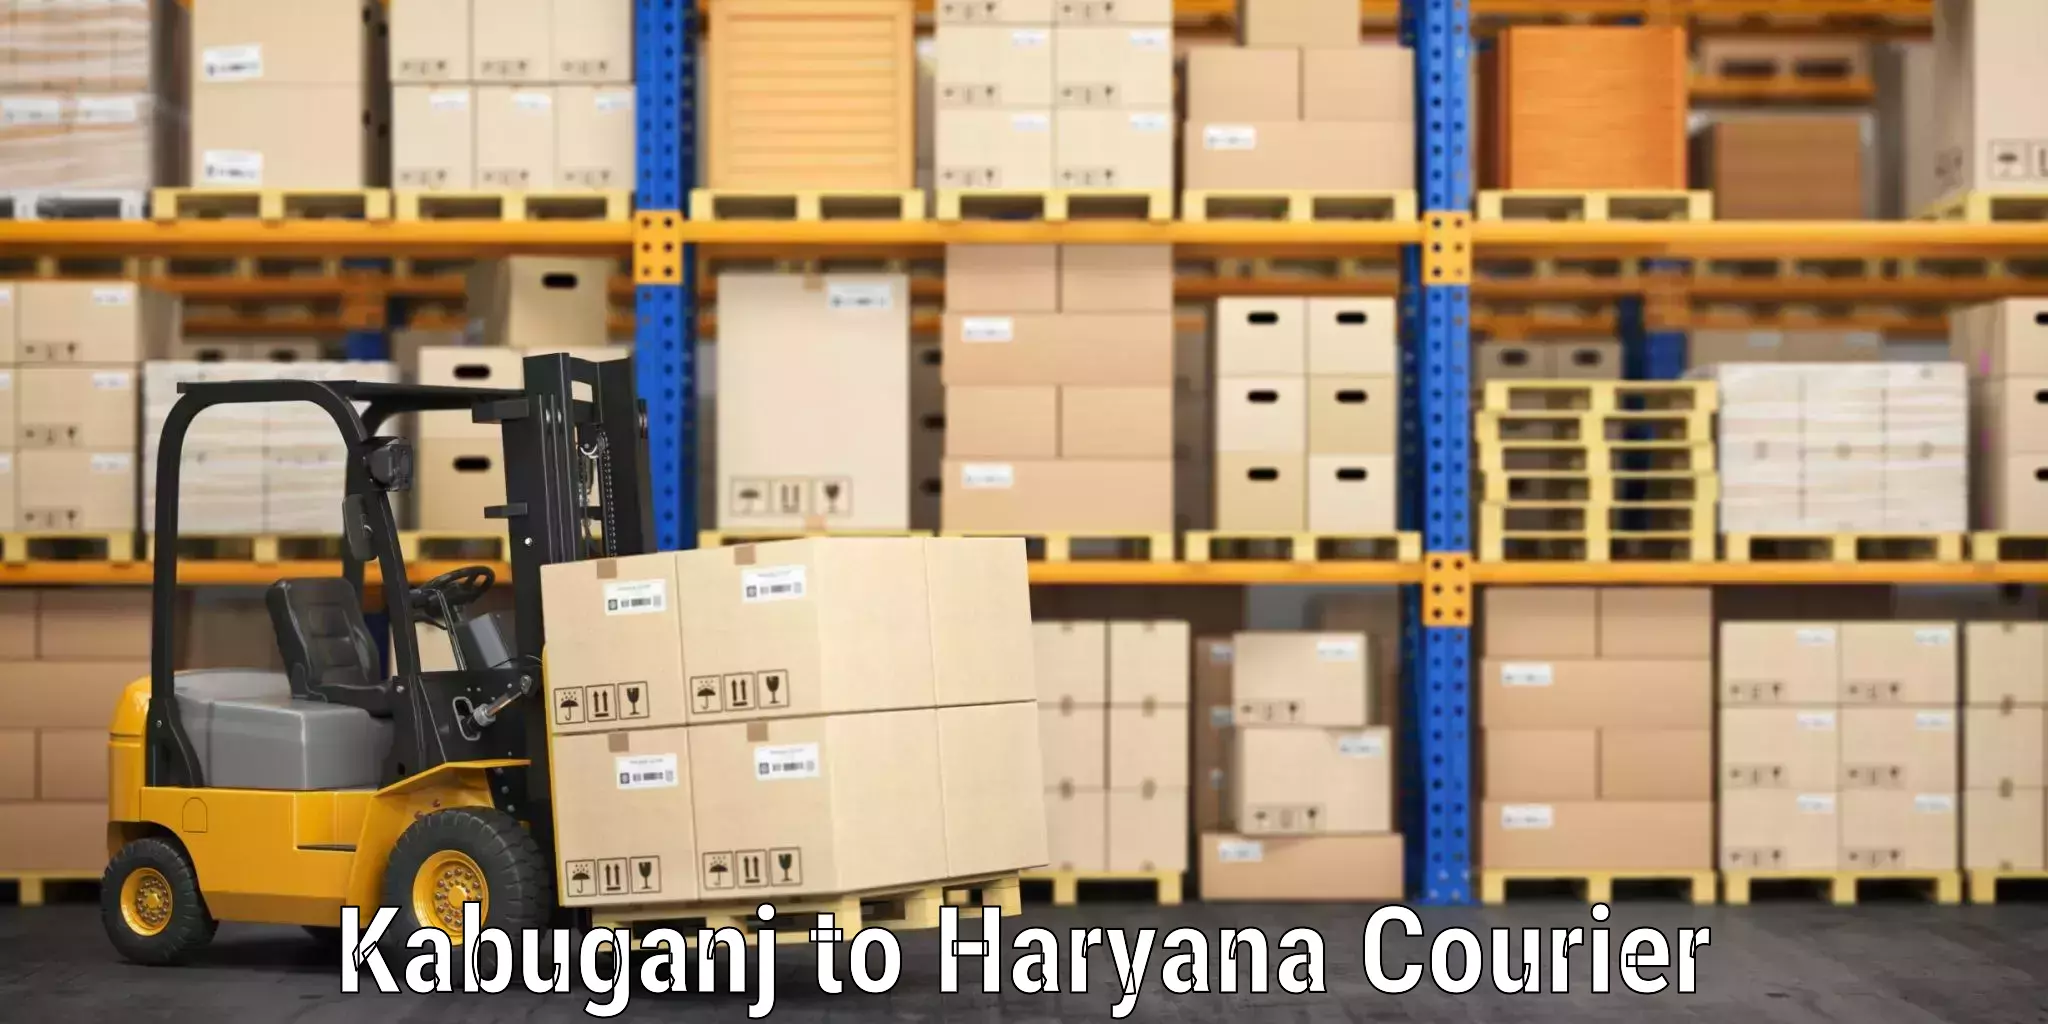 Luggage shipping planner in Kabuganj to Haryana